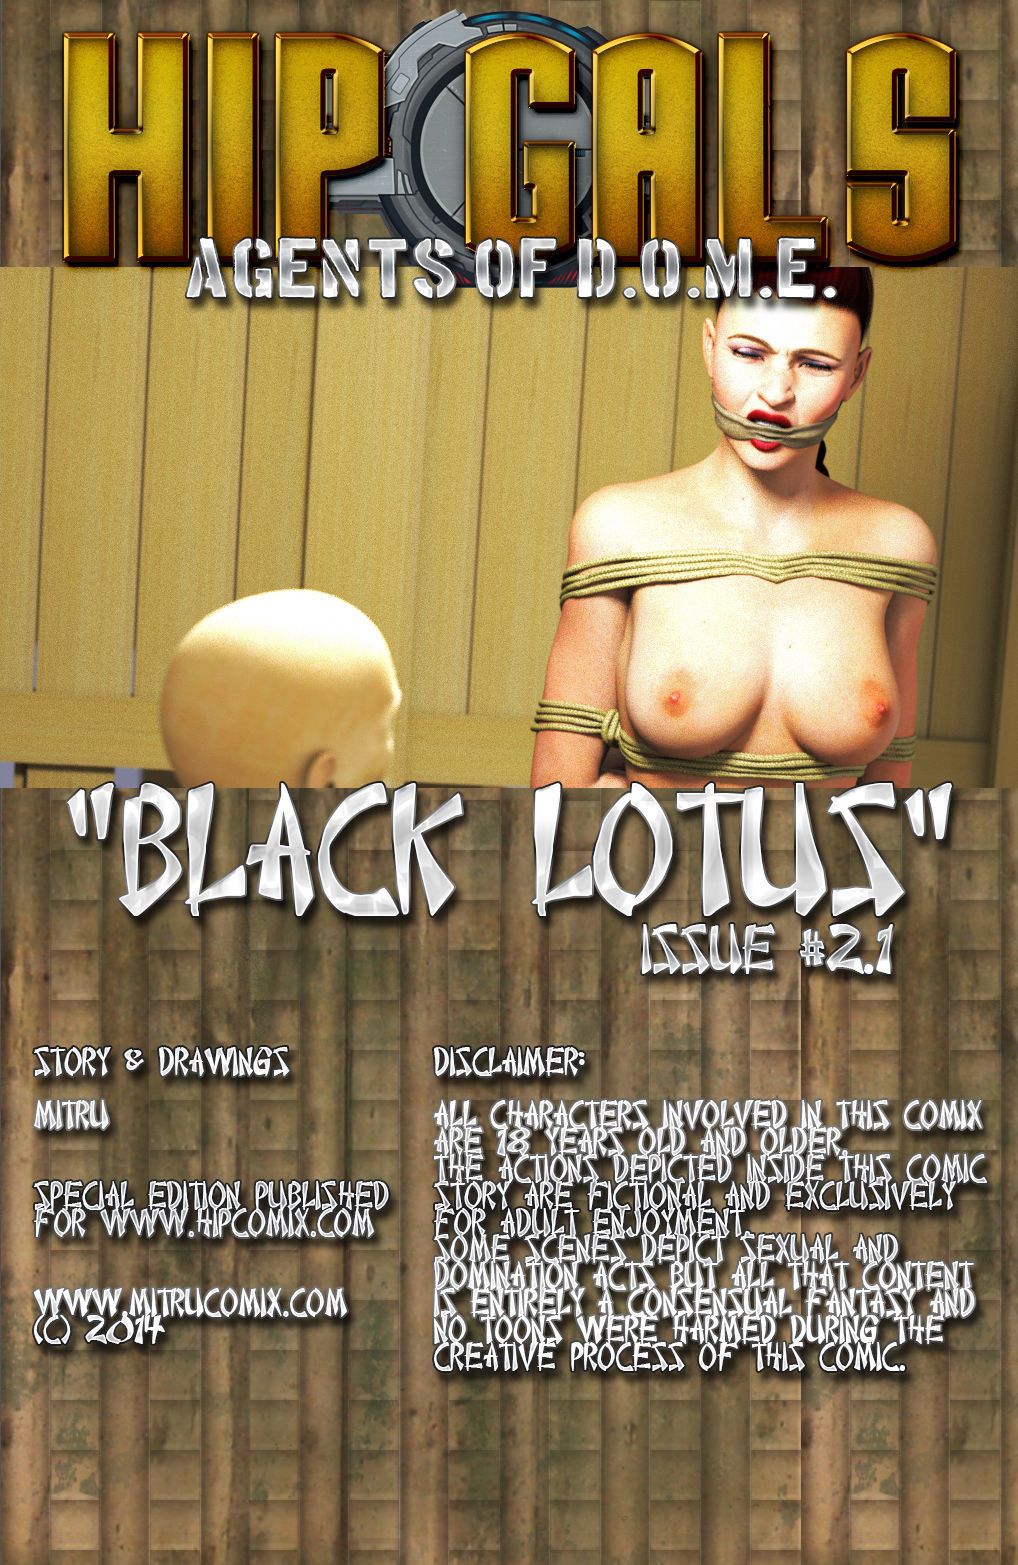 Siyah lotus 1-6 - PART 2